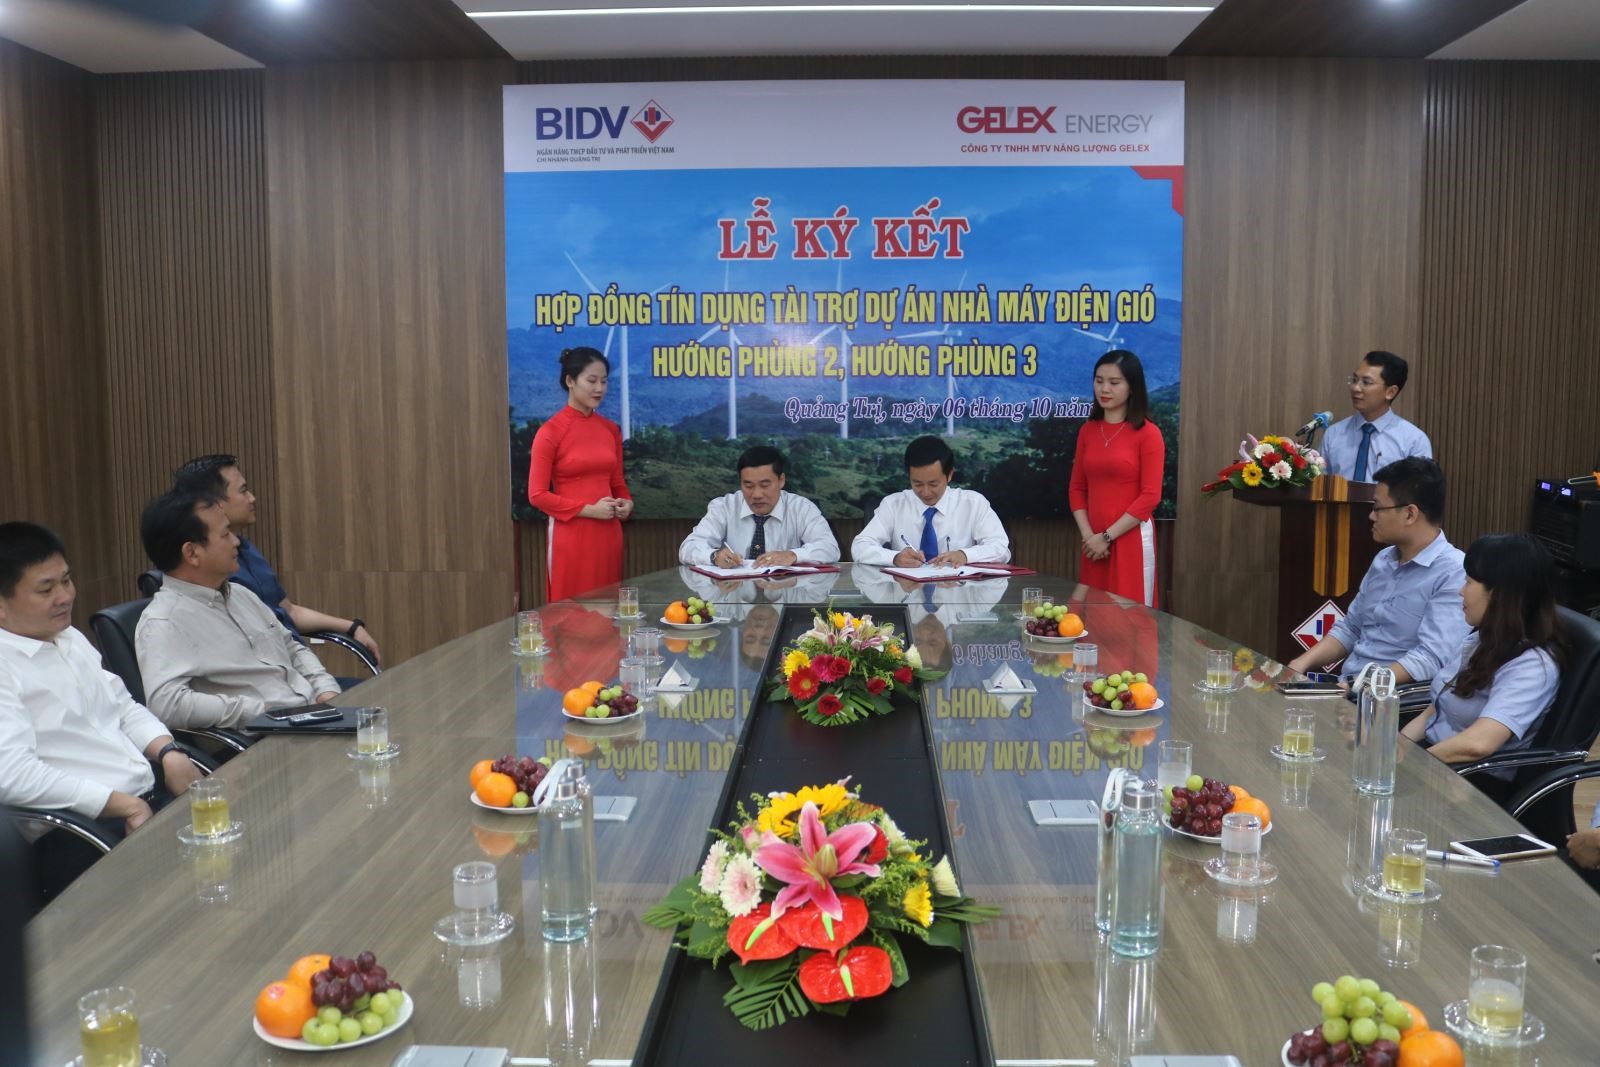 Đại diện lãnh đạo BIDV Quảng Trị và chủ đầu tư ký kết hỗ trợ tính dụng tài trợ dự án Nhà máy điện gió Hướng Phùng 2 và Hướng Phùng 3